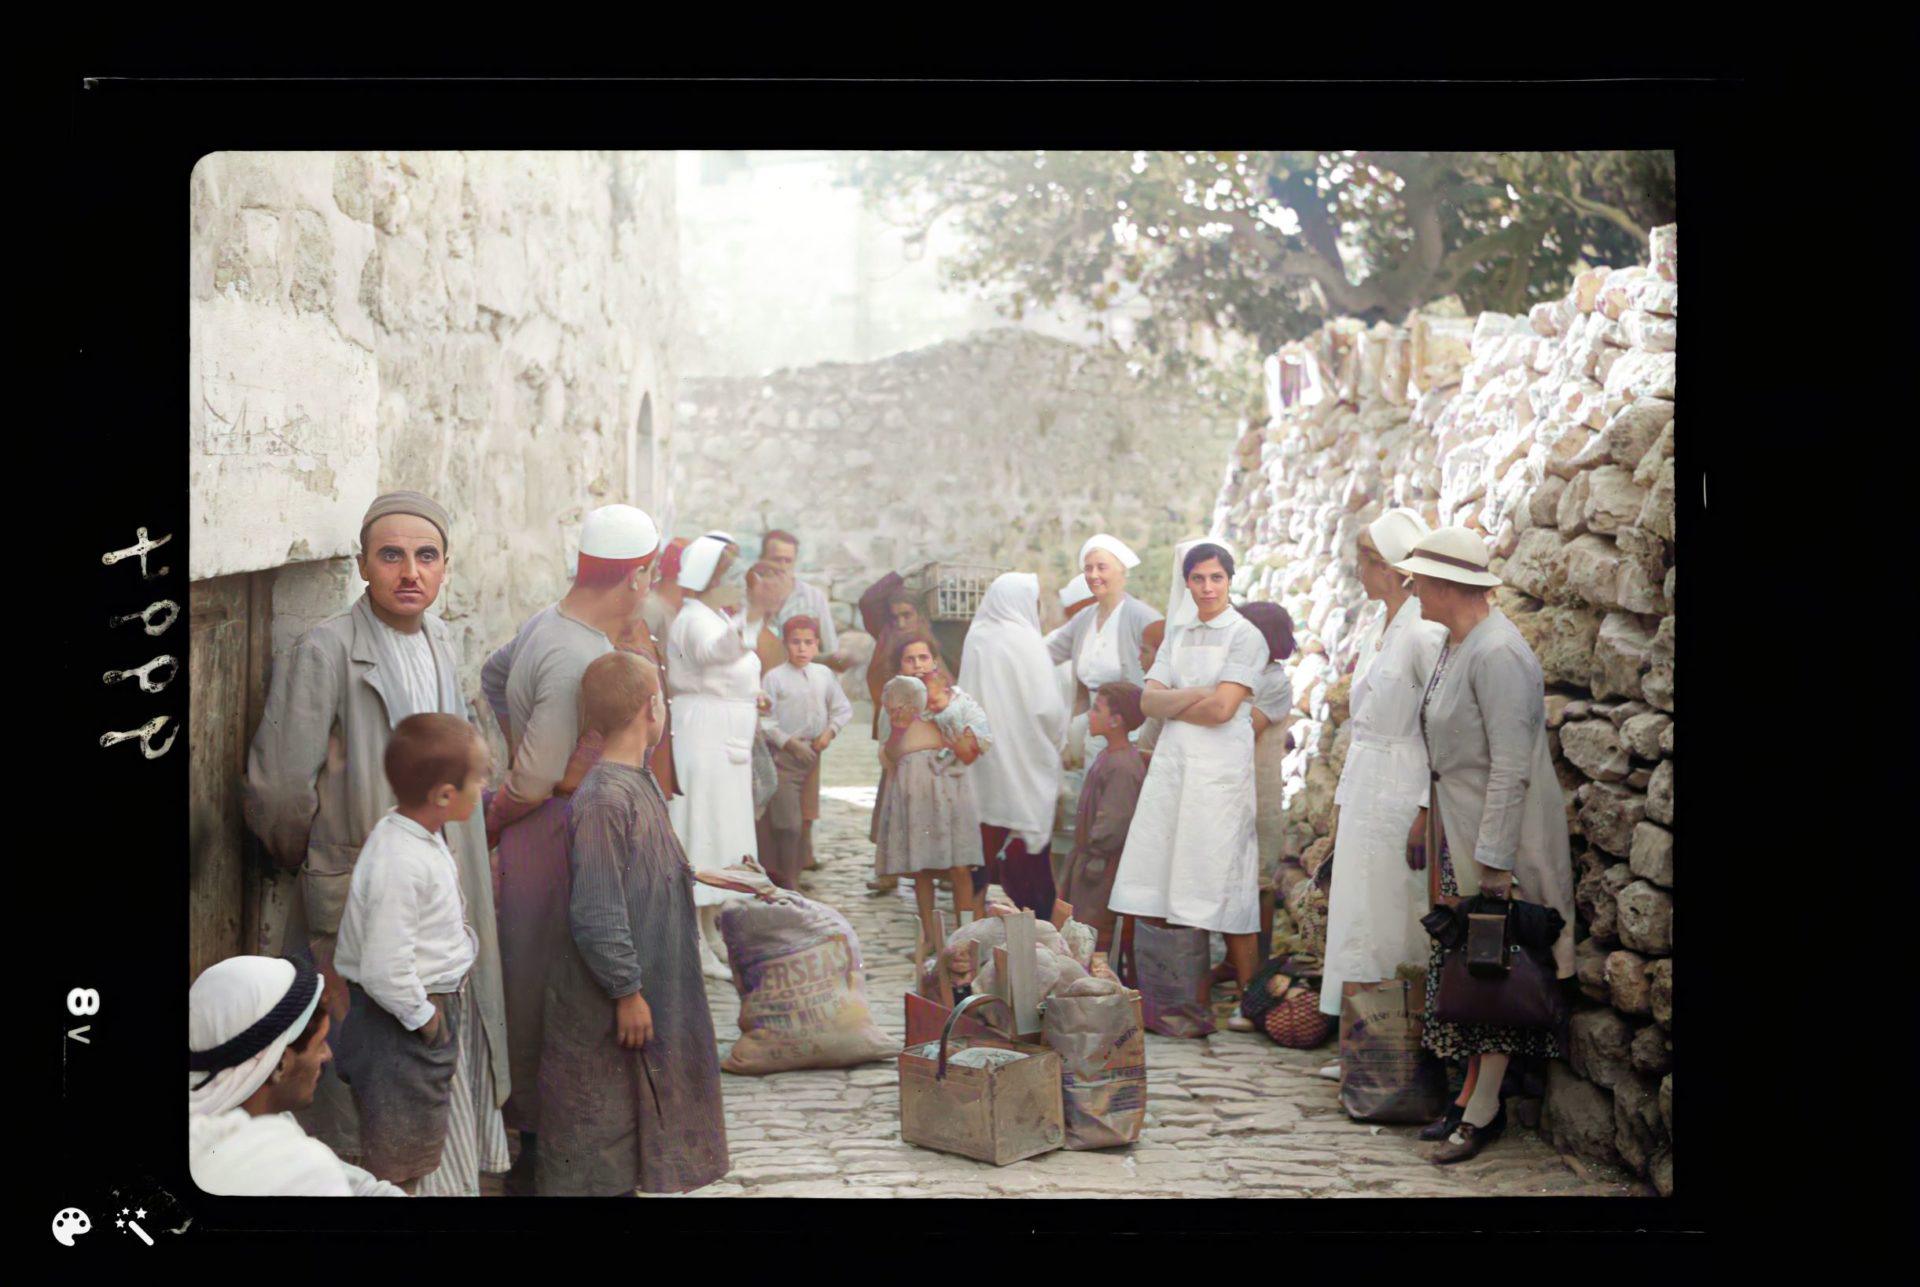 חלוקת מזון לתושבי העיר העתיקה, על ידי חברי קהילת אמריקן קולוני, במהלך ההתקוממות ערבית בירושלים, 17 באוקטובר 1938. מספר תמונה: LC-DIG-matpc-18869